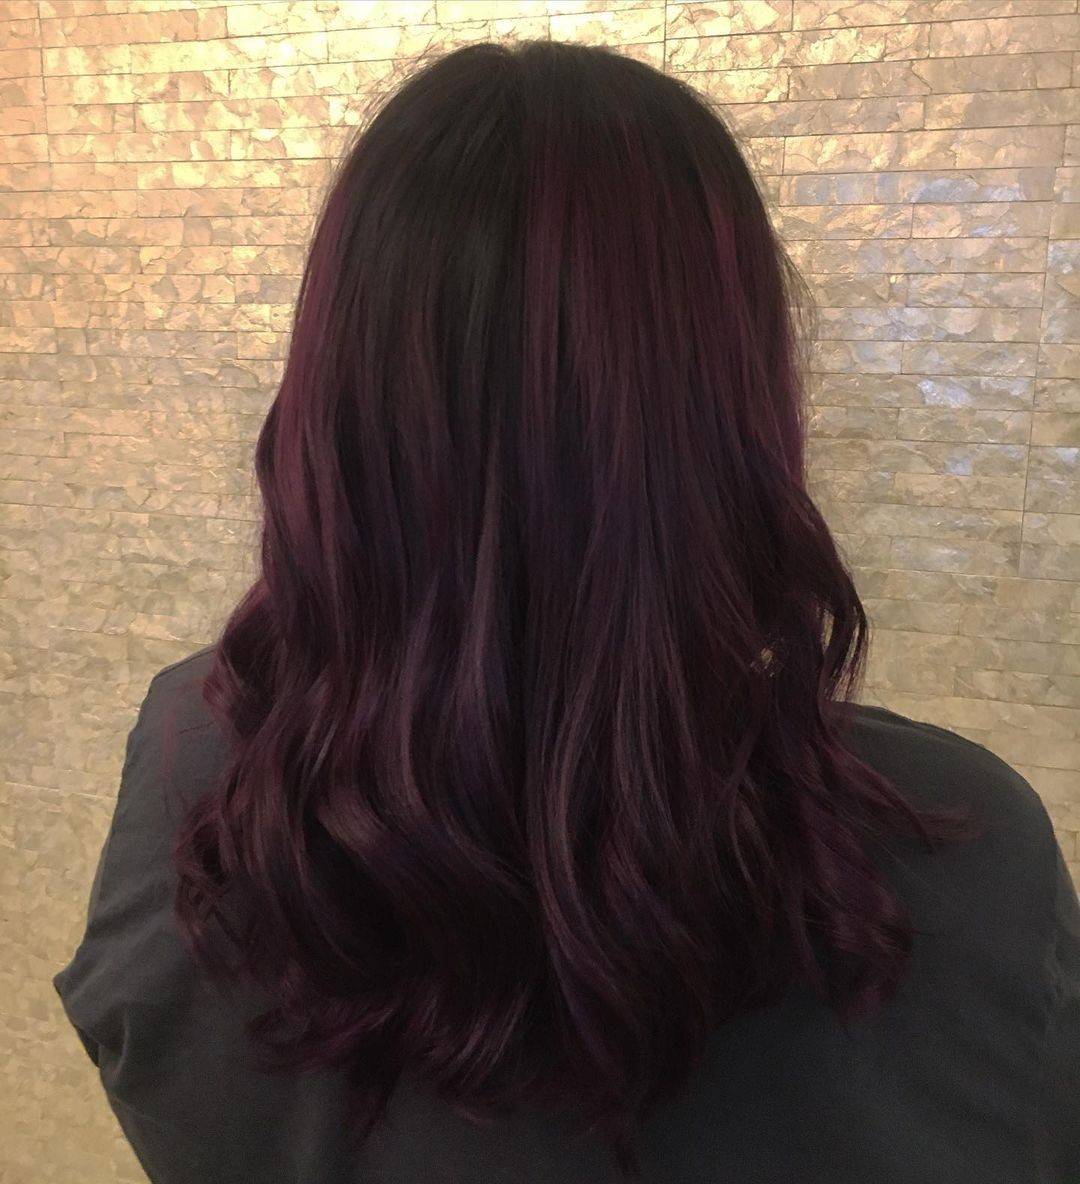 Burgundy hair color 94 burgundy hair color | burgundy hair color for women | burgundy hair color highlights Burgundy Hair Color